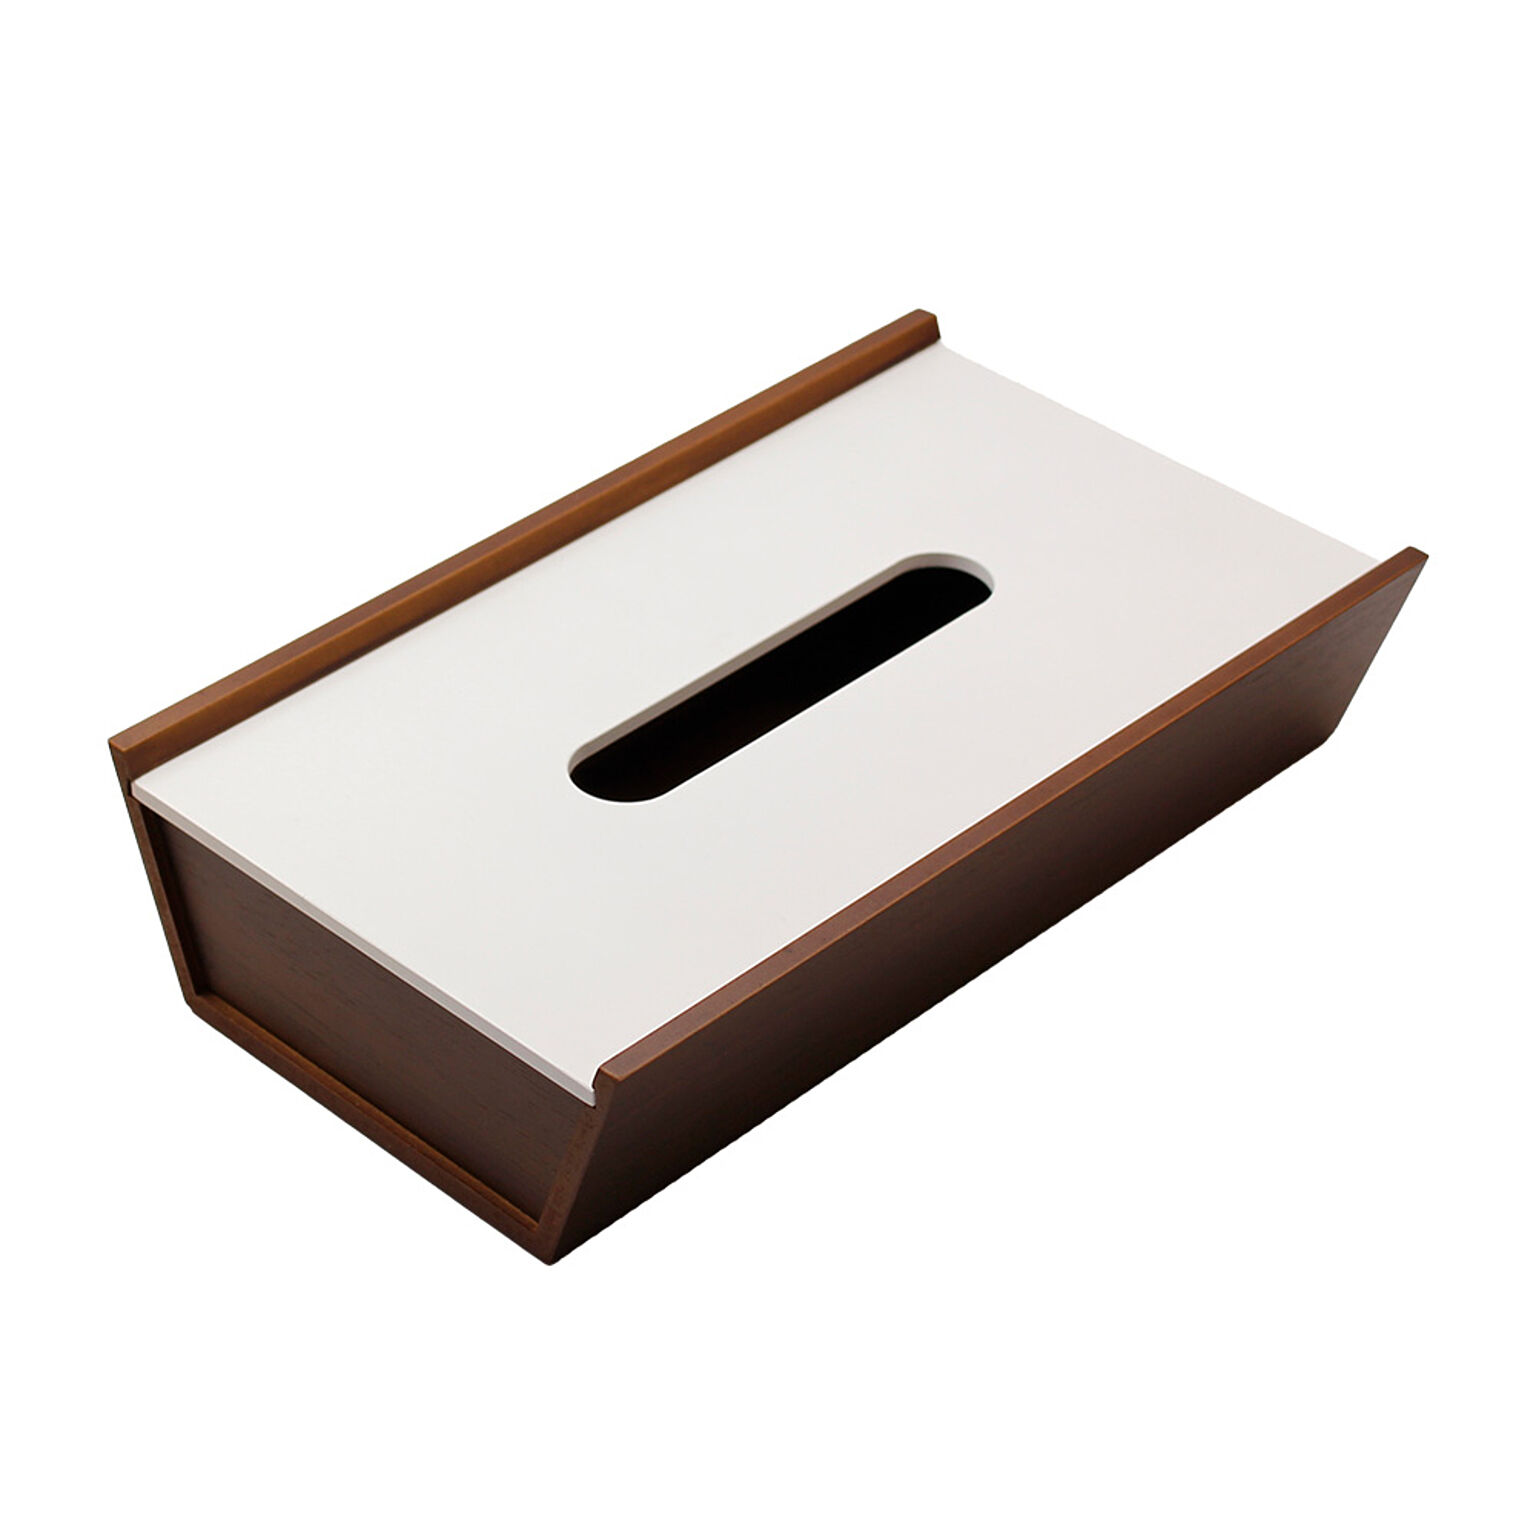 ヤマト工芸 choco block ティッシュケース 木製 日本製 卓上 置き型 裏表 ウォールナット YK12-002